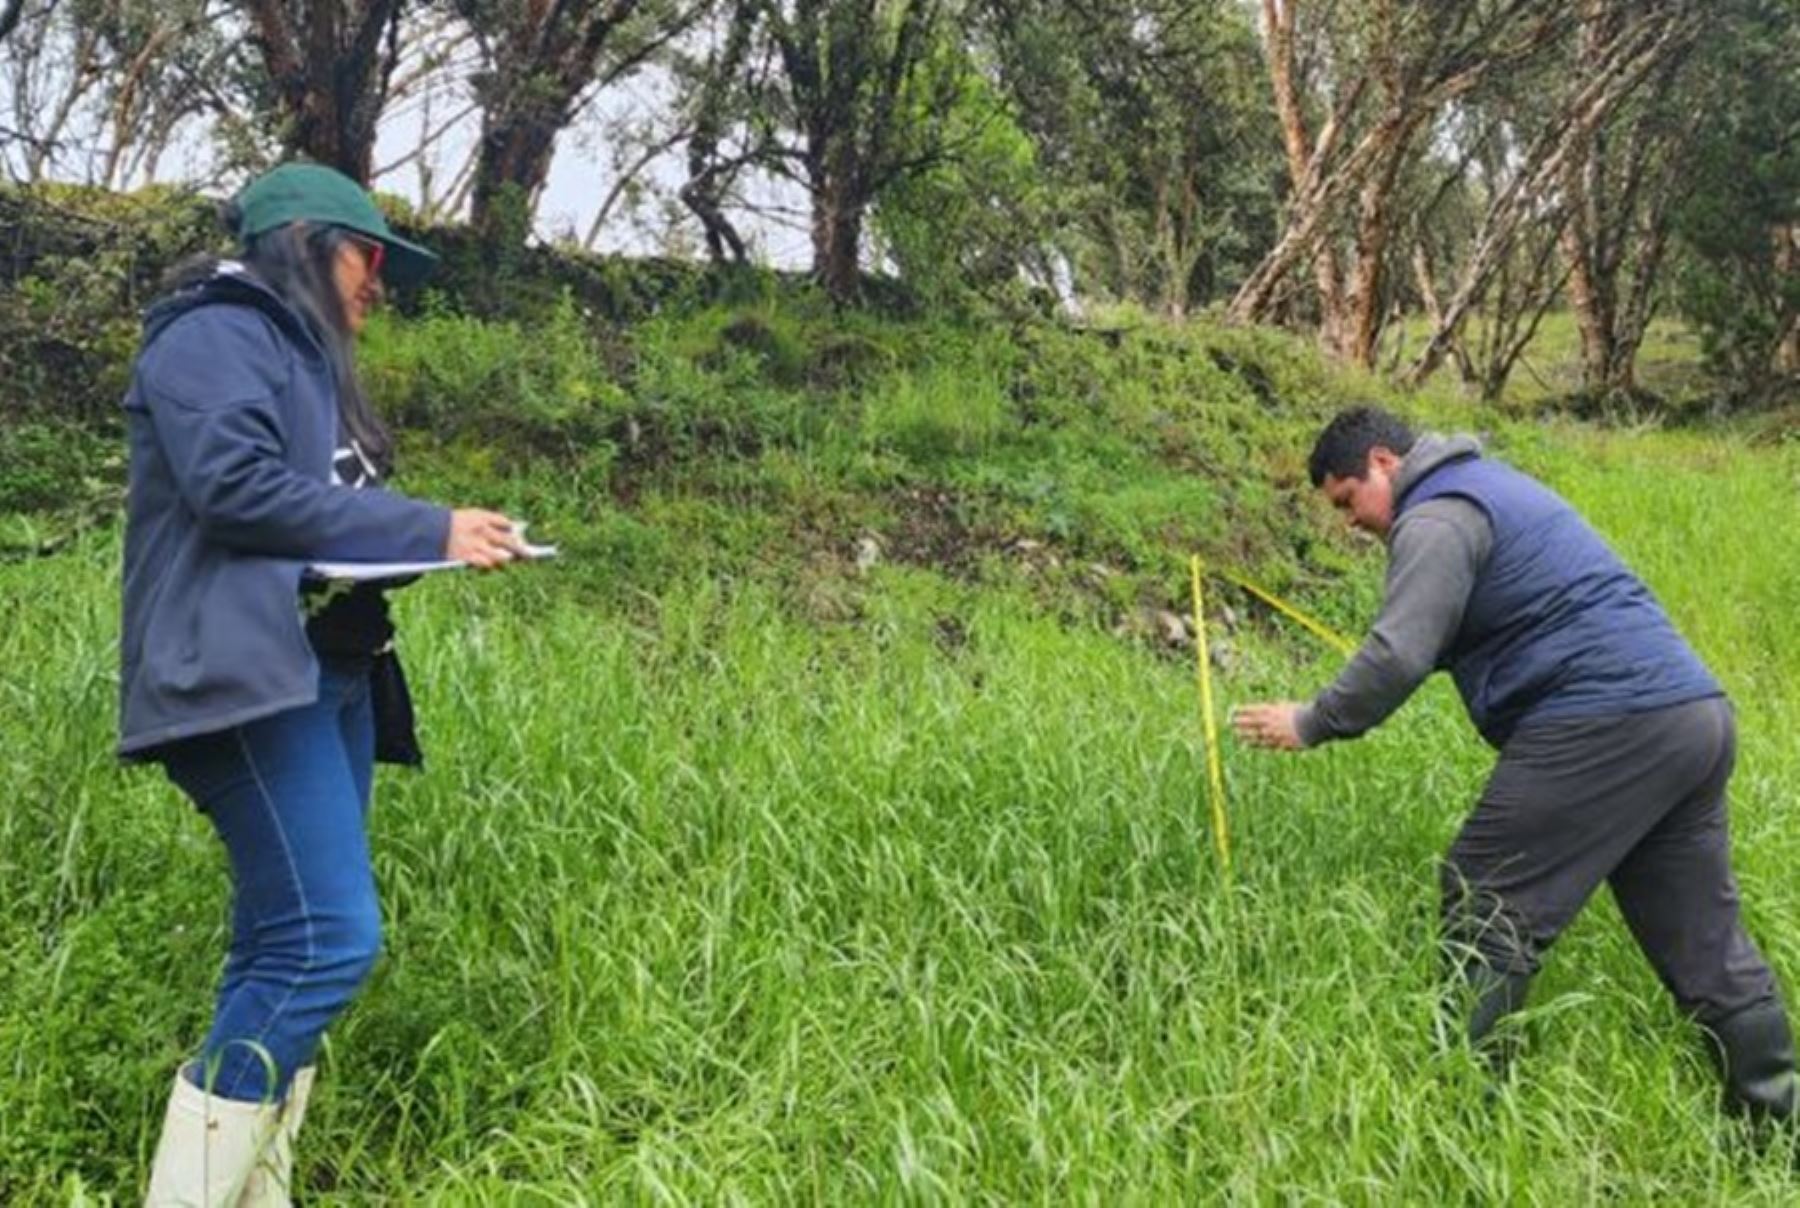 El Ministerio de Desarrollo Agrario y Riego, a través del Instituto Nacional de Innovación Agraria (INIA), implementará este año en Cajamarca el novedoso sistema de pastoreo “Regla Forrajera”, con la finalidad de generar tecnologías y protocolos, que mejoren la calidad y competitividad de la actividad ganadera en la región.